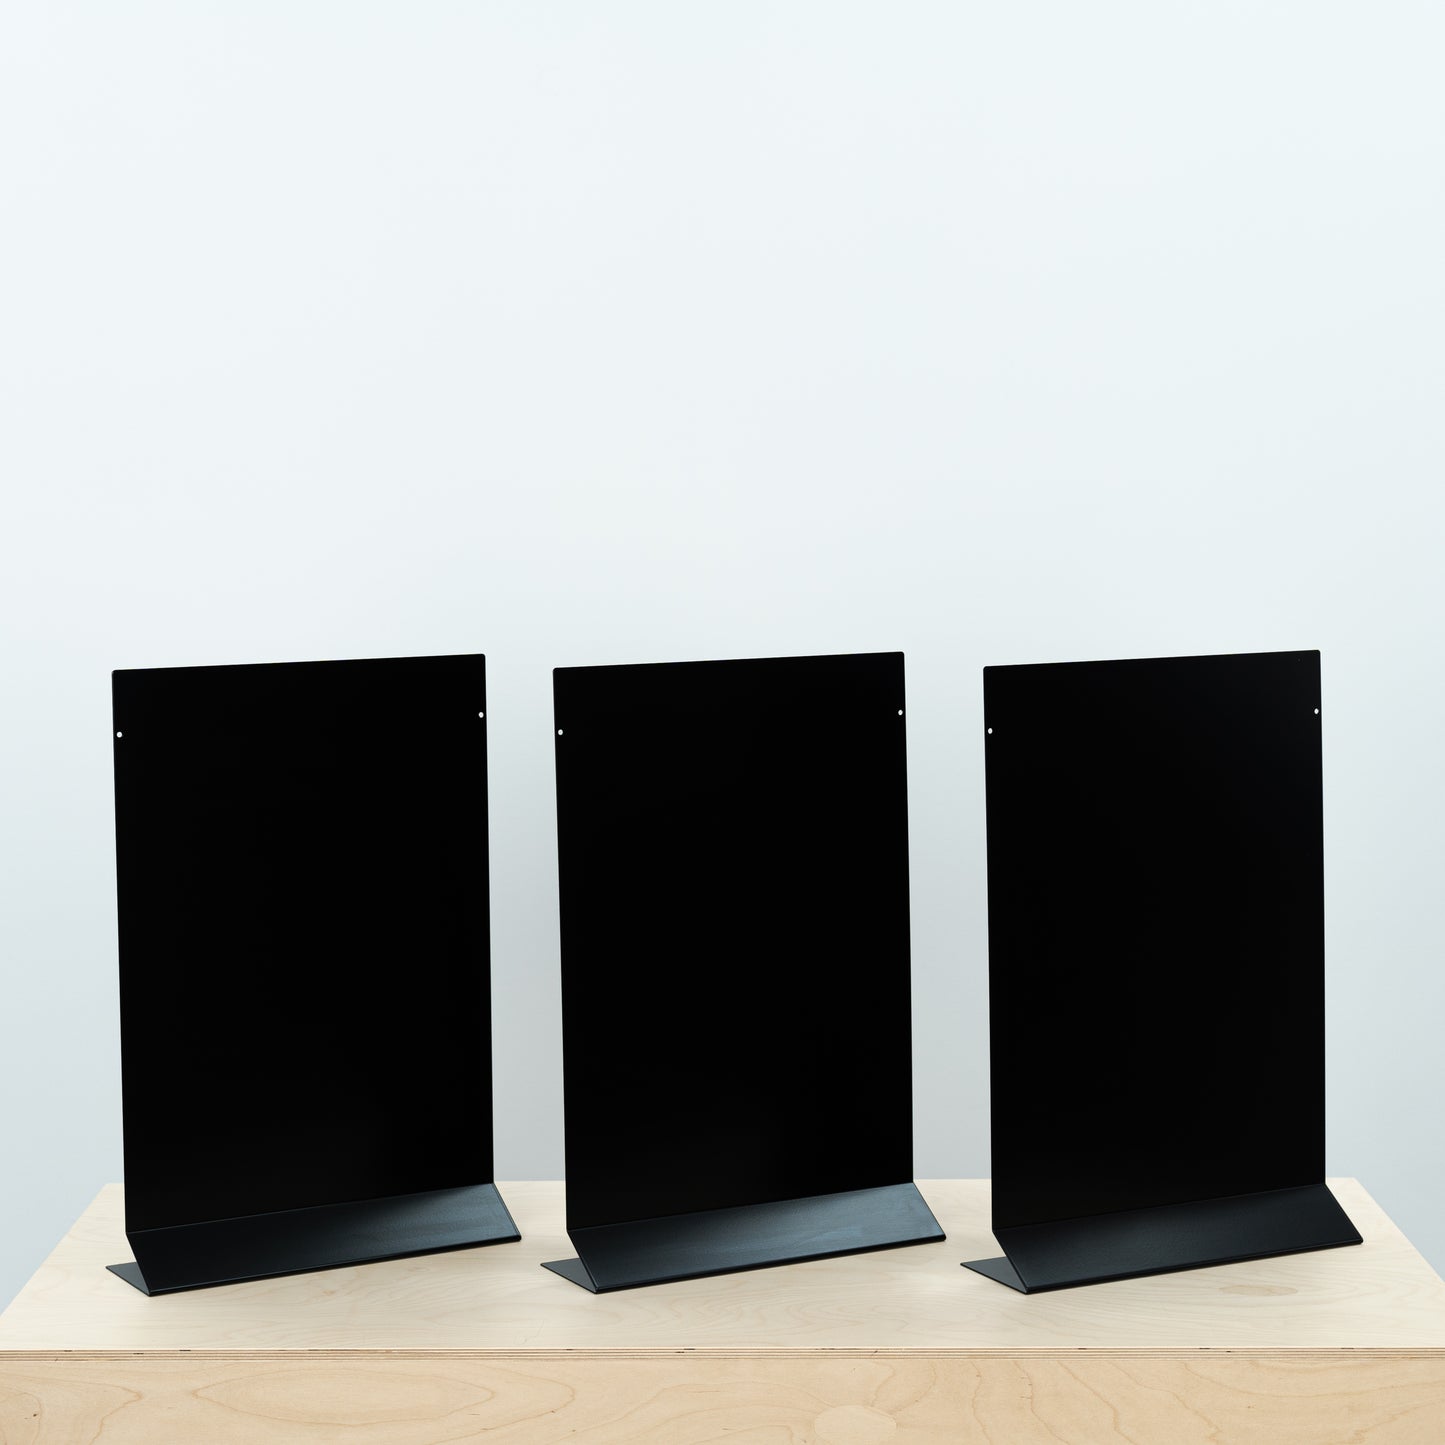 VENTE D'ÉCHANTILLONS | Lot de 3 panneaux de table magnétiques en métal SAP-A3-V-BL, noirs, verticaux, taille A3 (Tabloid))